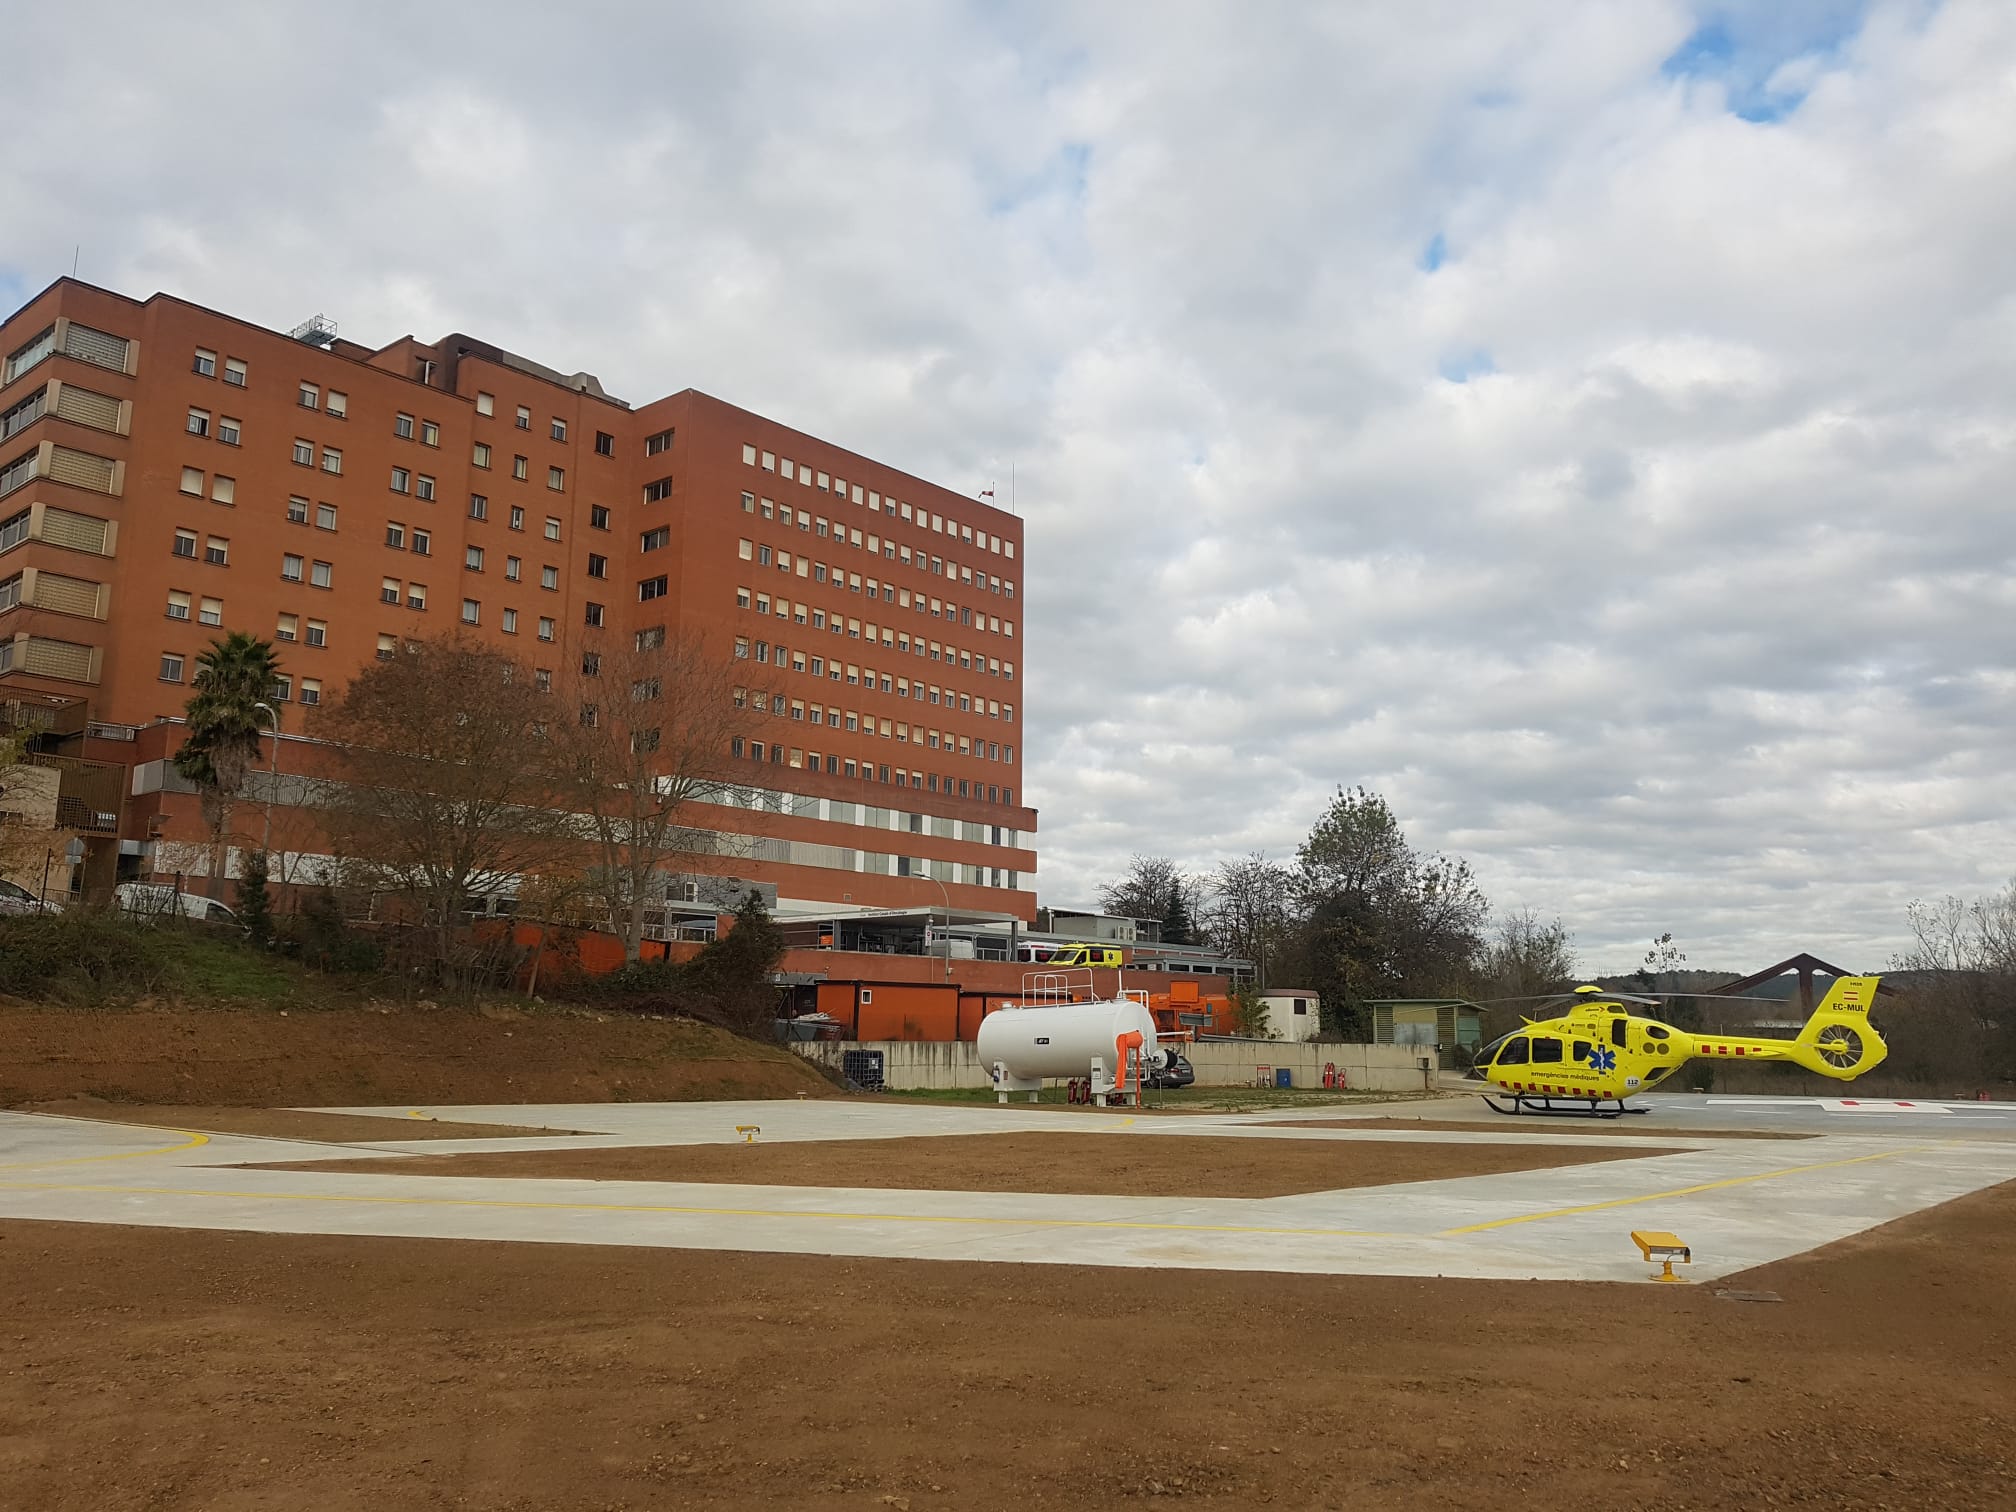 L'helisuperfície de l'Hospital Trueta, amb un helicòpter.